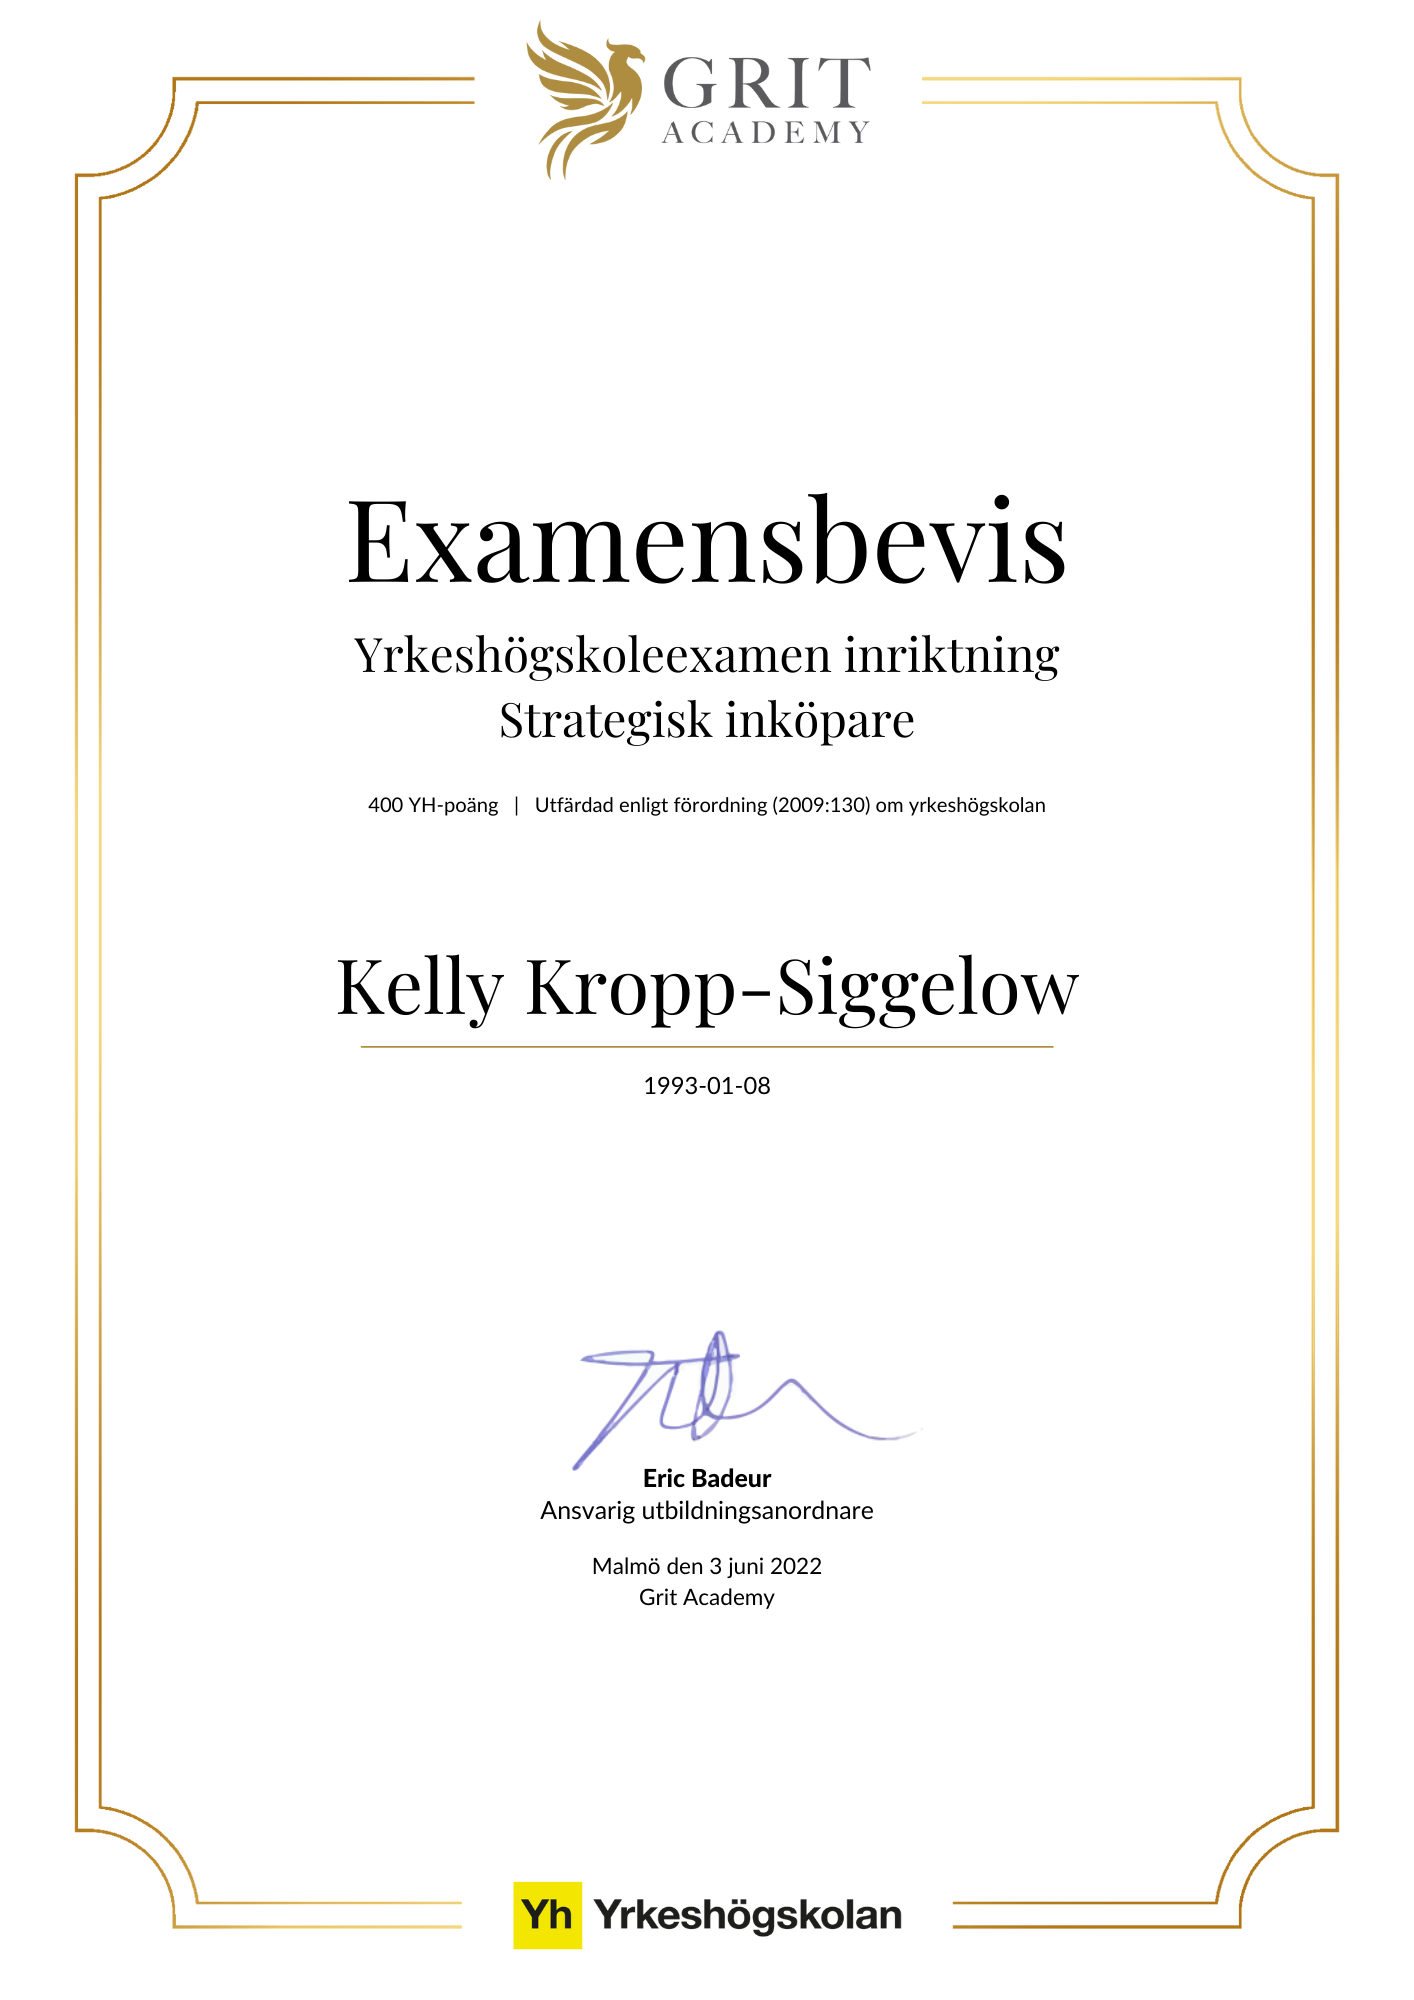 Examensbevis Kelly Kropp-Siggelow - 1